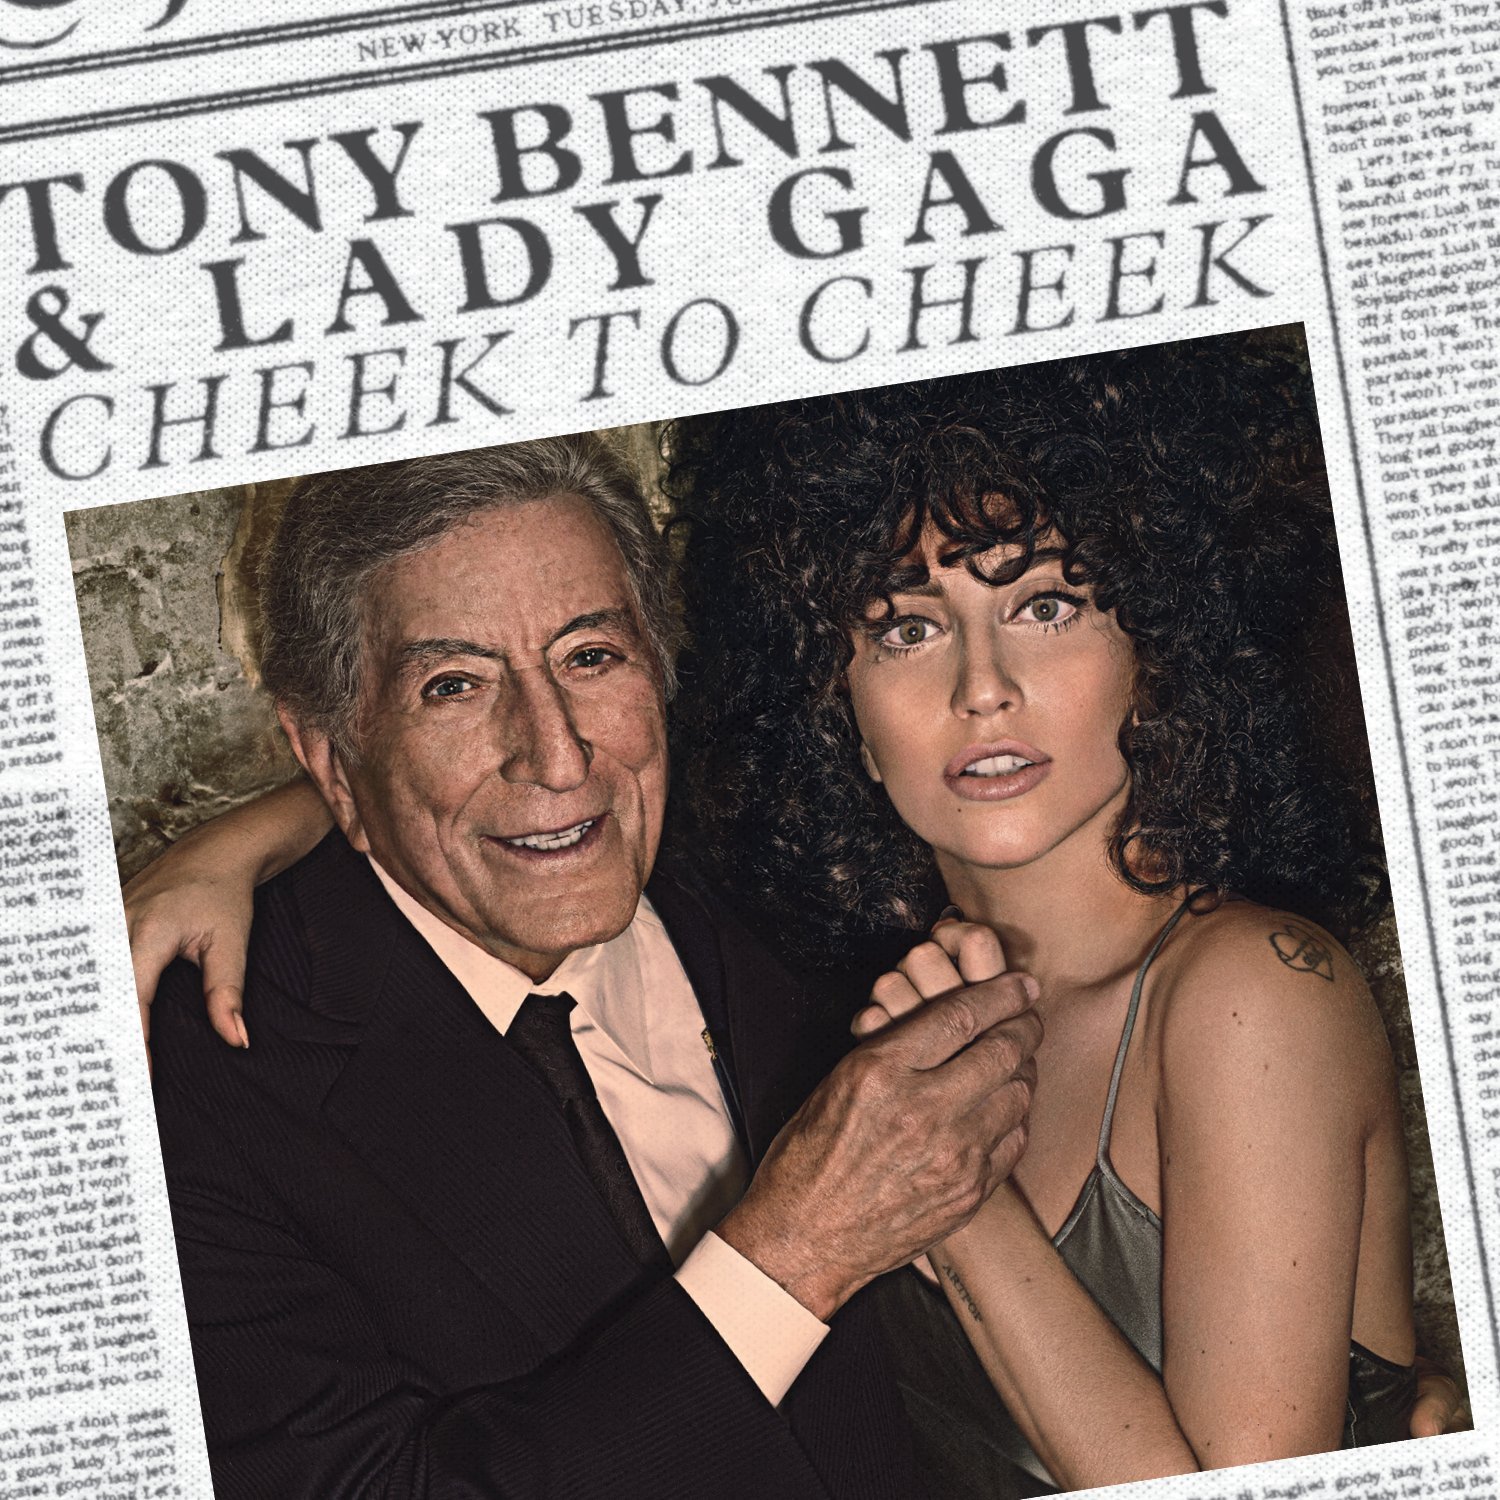 Vinile Tony Bennett & Lady Gaga - Cheek To Cheek (2 Lp) NUOVO SIGILLATO, EDIZIONE DEL 30/11/2015 SUBITO DISPONIBILE